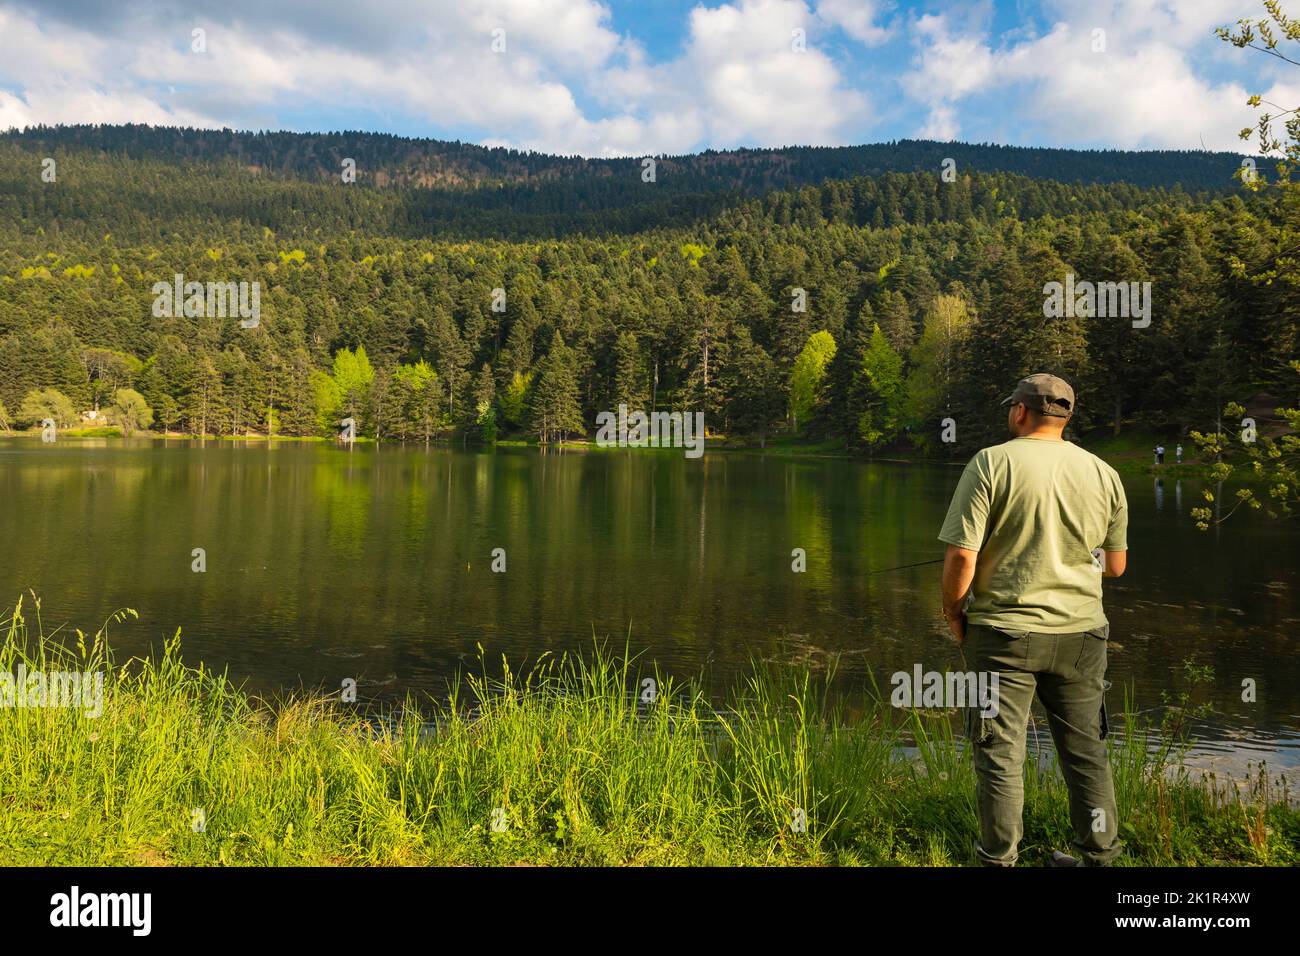 Pêcheur homme pêche près du lac dans la forêt. Photo d'activité de loisir ou de loisir Banque D'Images